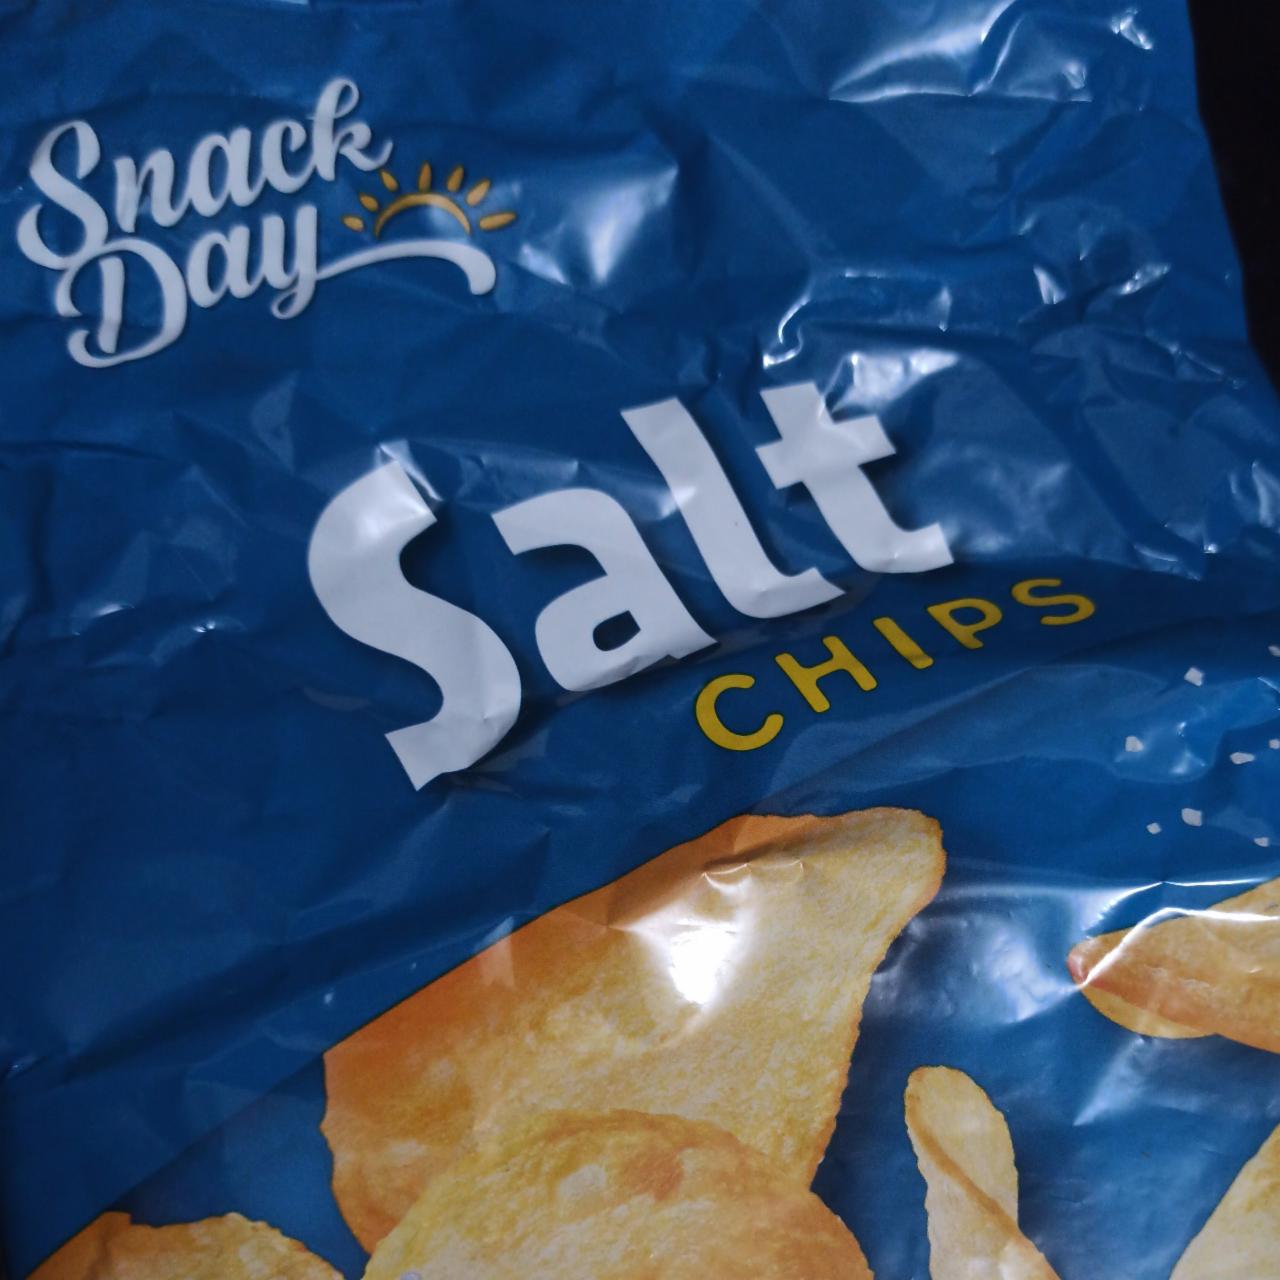 Fotografie - Salt Chips Snack Day